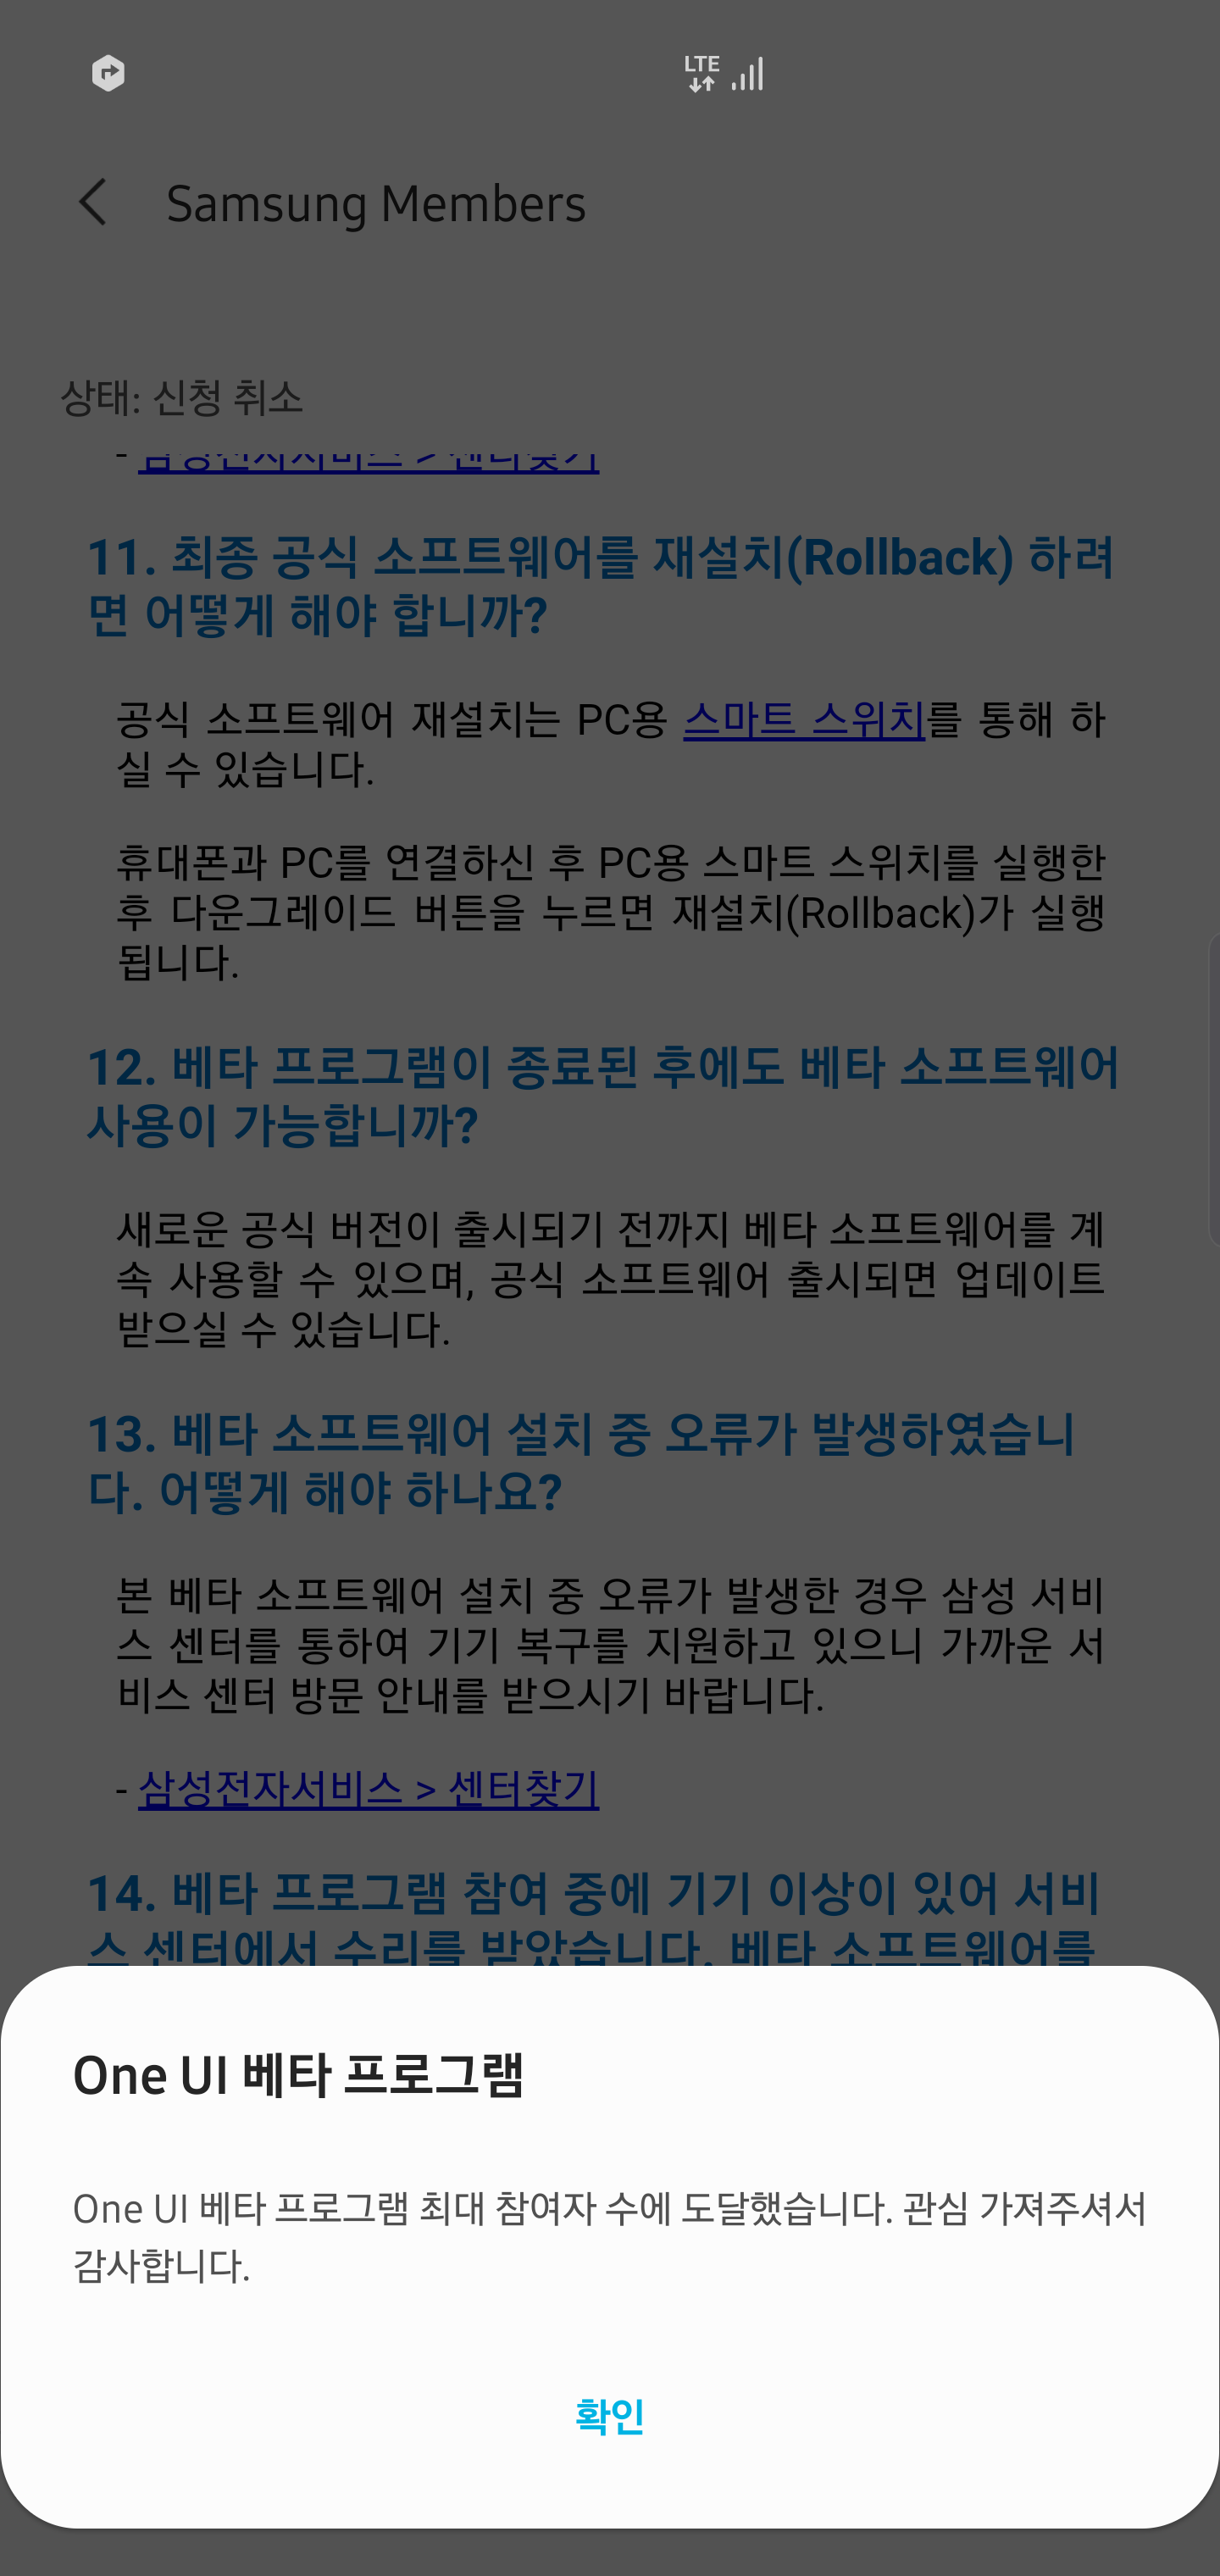 Screenshot_20191025-082728_Samsung Members.png